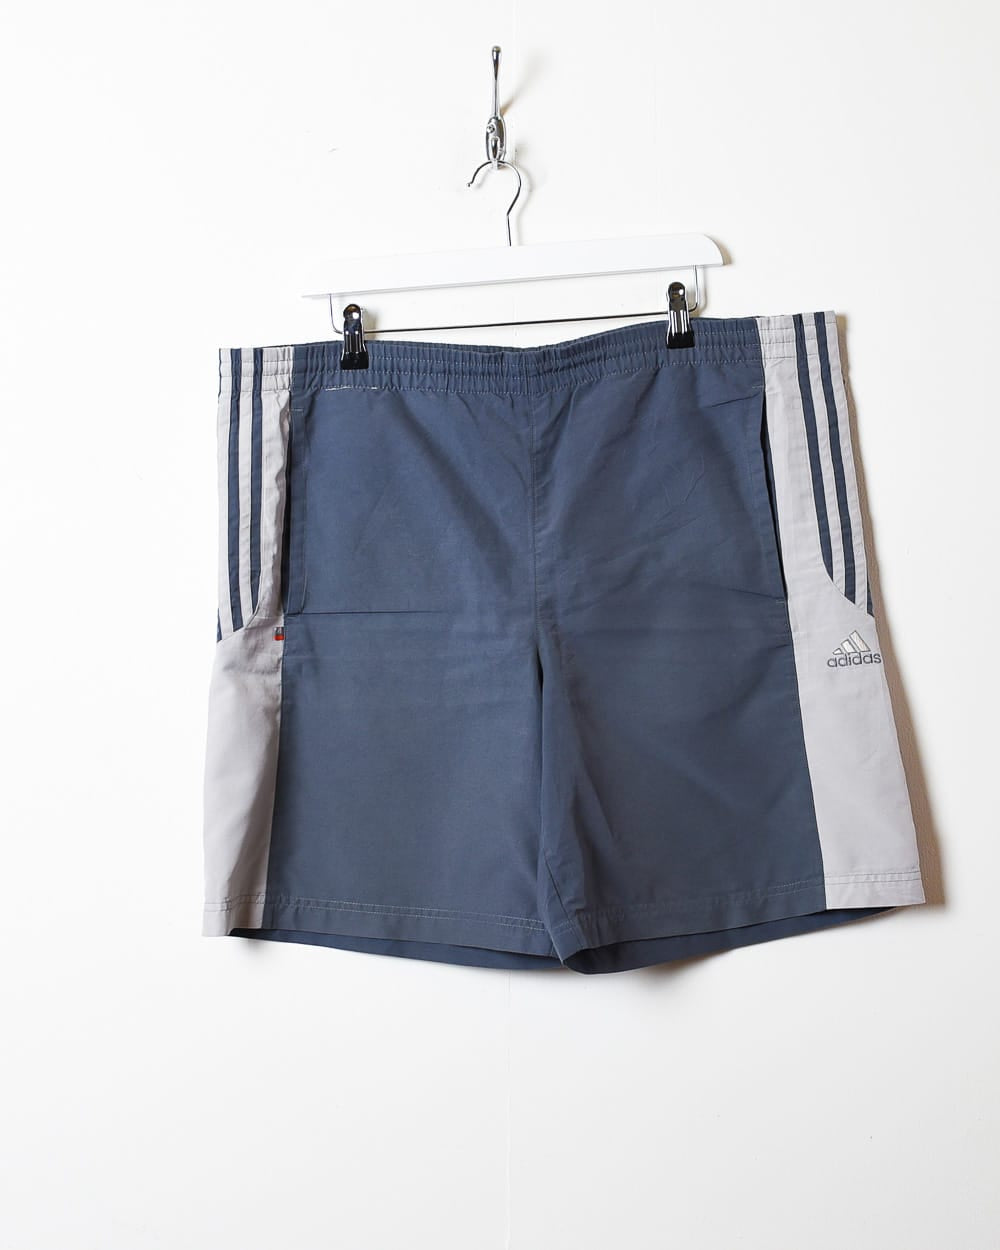 Grey Adidas Shorts - X-Large